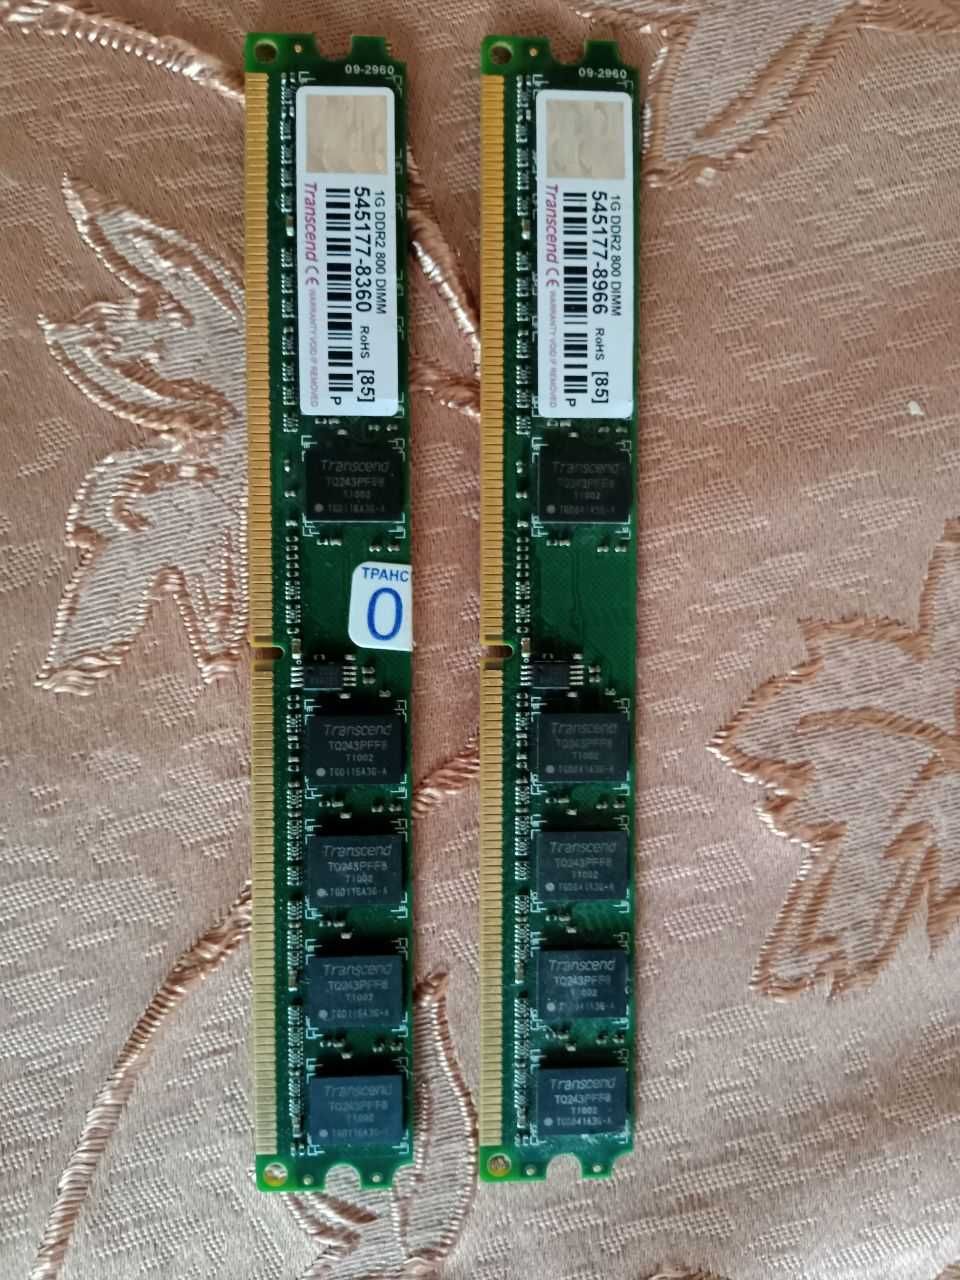 ОЗУ DDR2 800 DIMM\1GB  2 шт.